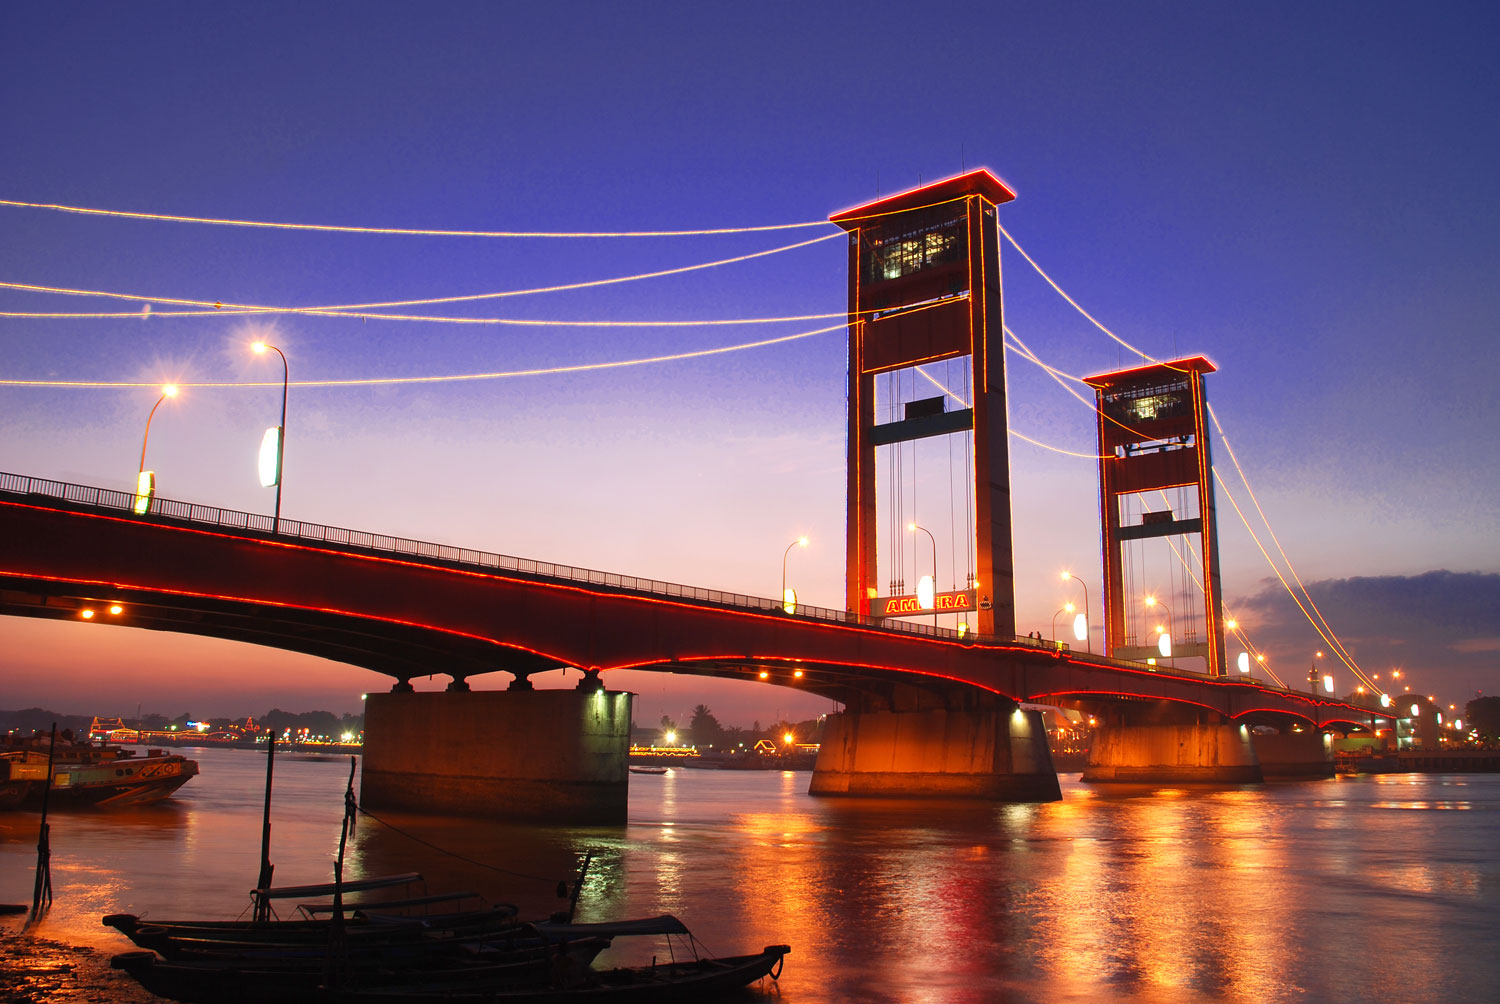 Indonesian Travel: Ampera Bridge In Palembang